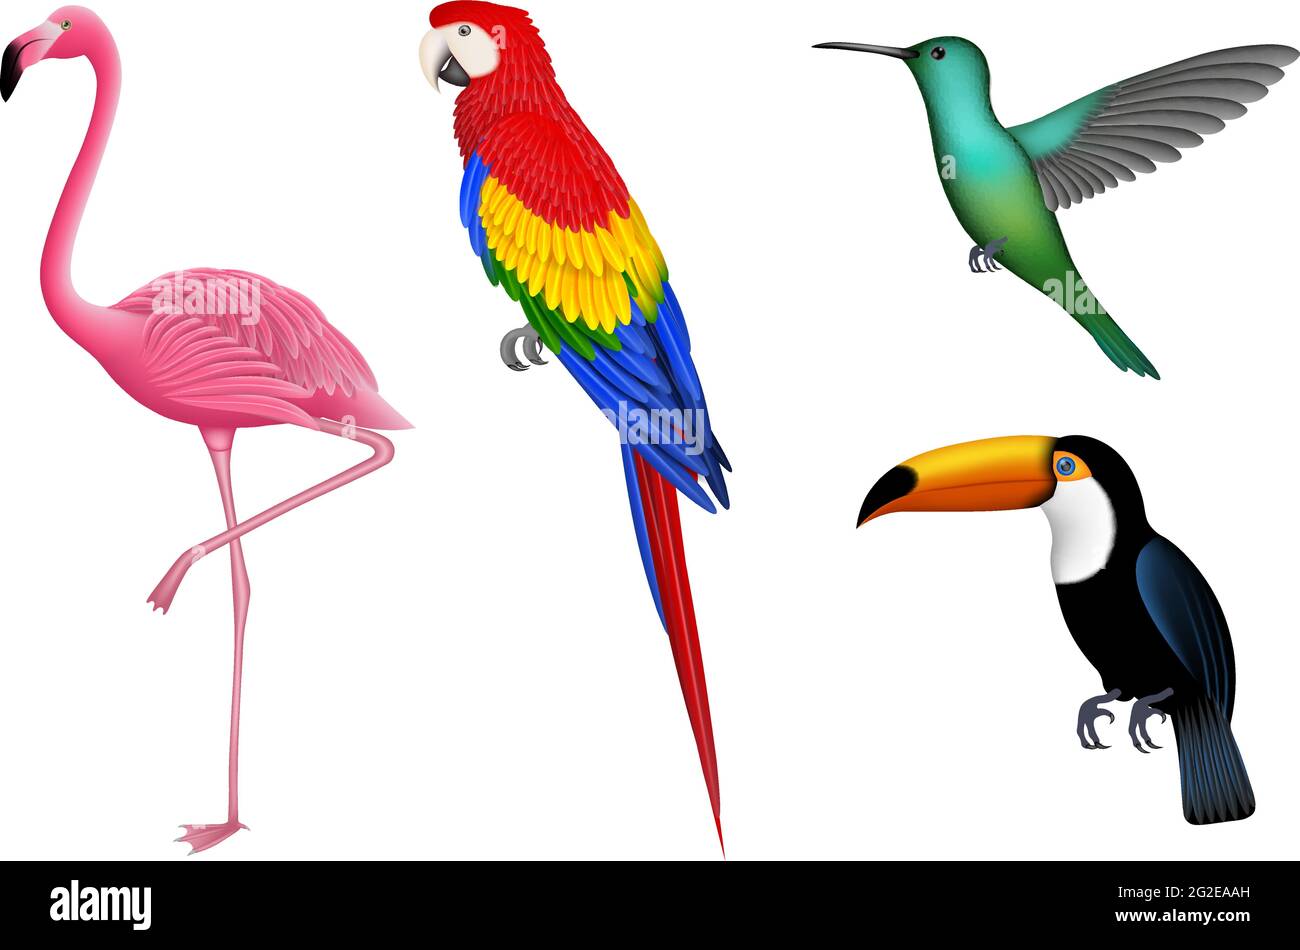 Insieme di uccelli esotici isolati. Uccelli tropicali per gli sfondi estivi. Flamingo, pappagallo, colibrì e toucan. Illustrazione Vettoriale